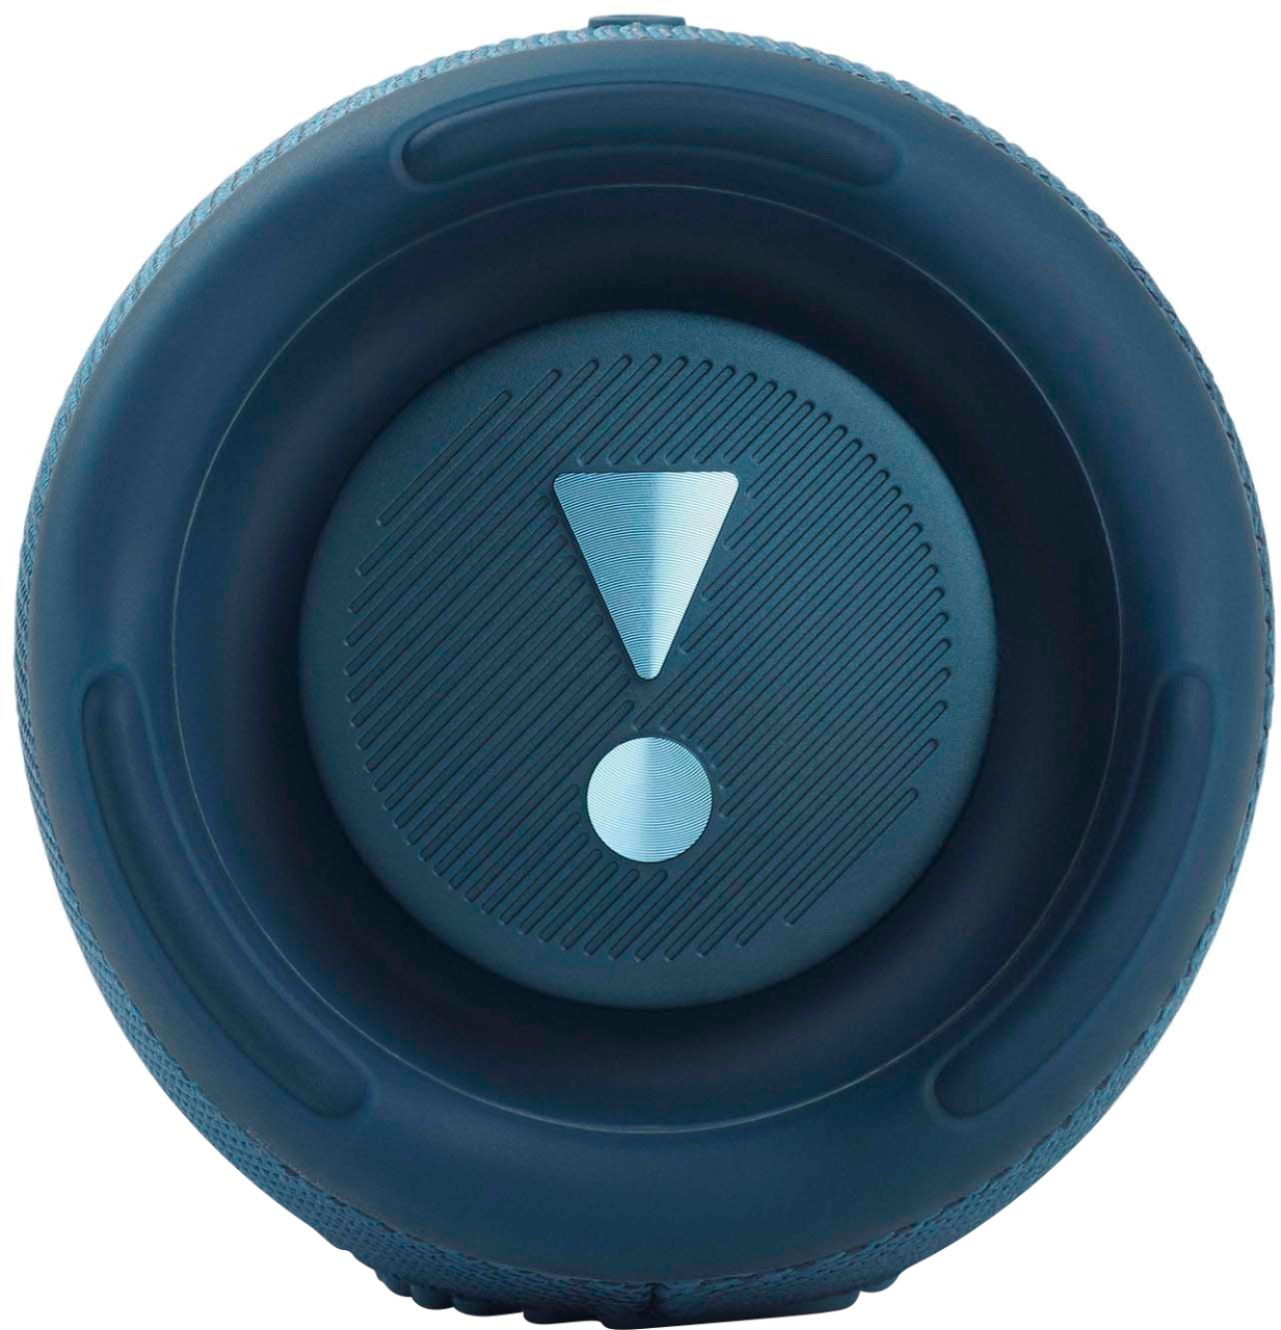 JBL CHARGE5 Portable Waterproof Speaker with Powerbank Blue JBLCHARGE5BLUAM  - Best Buy